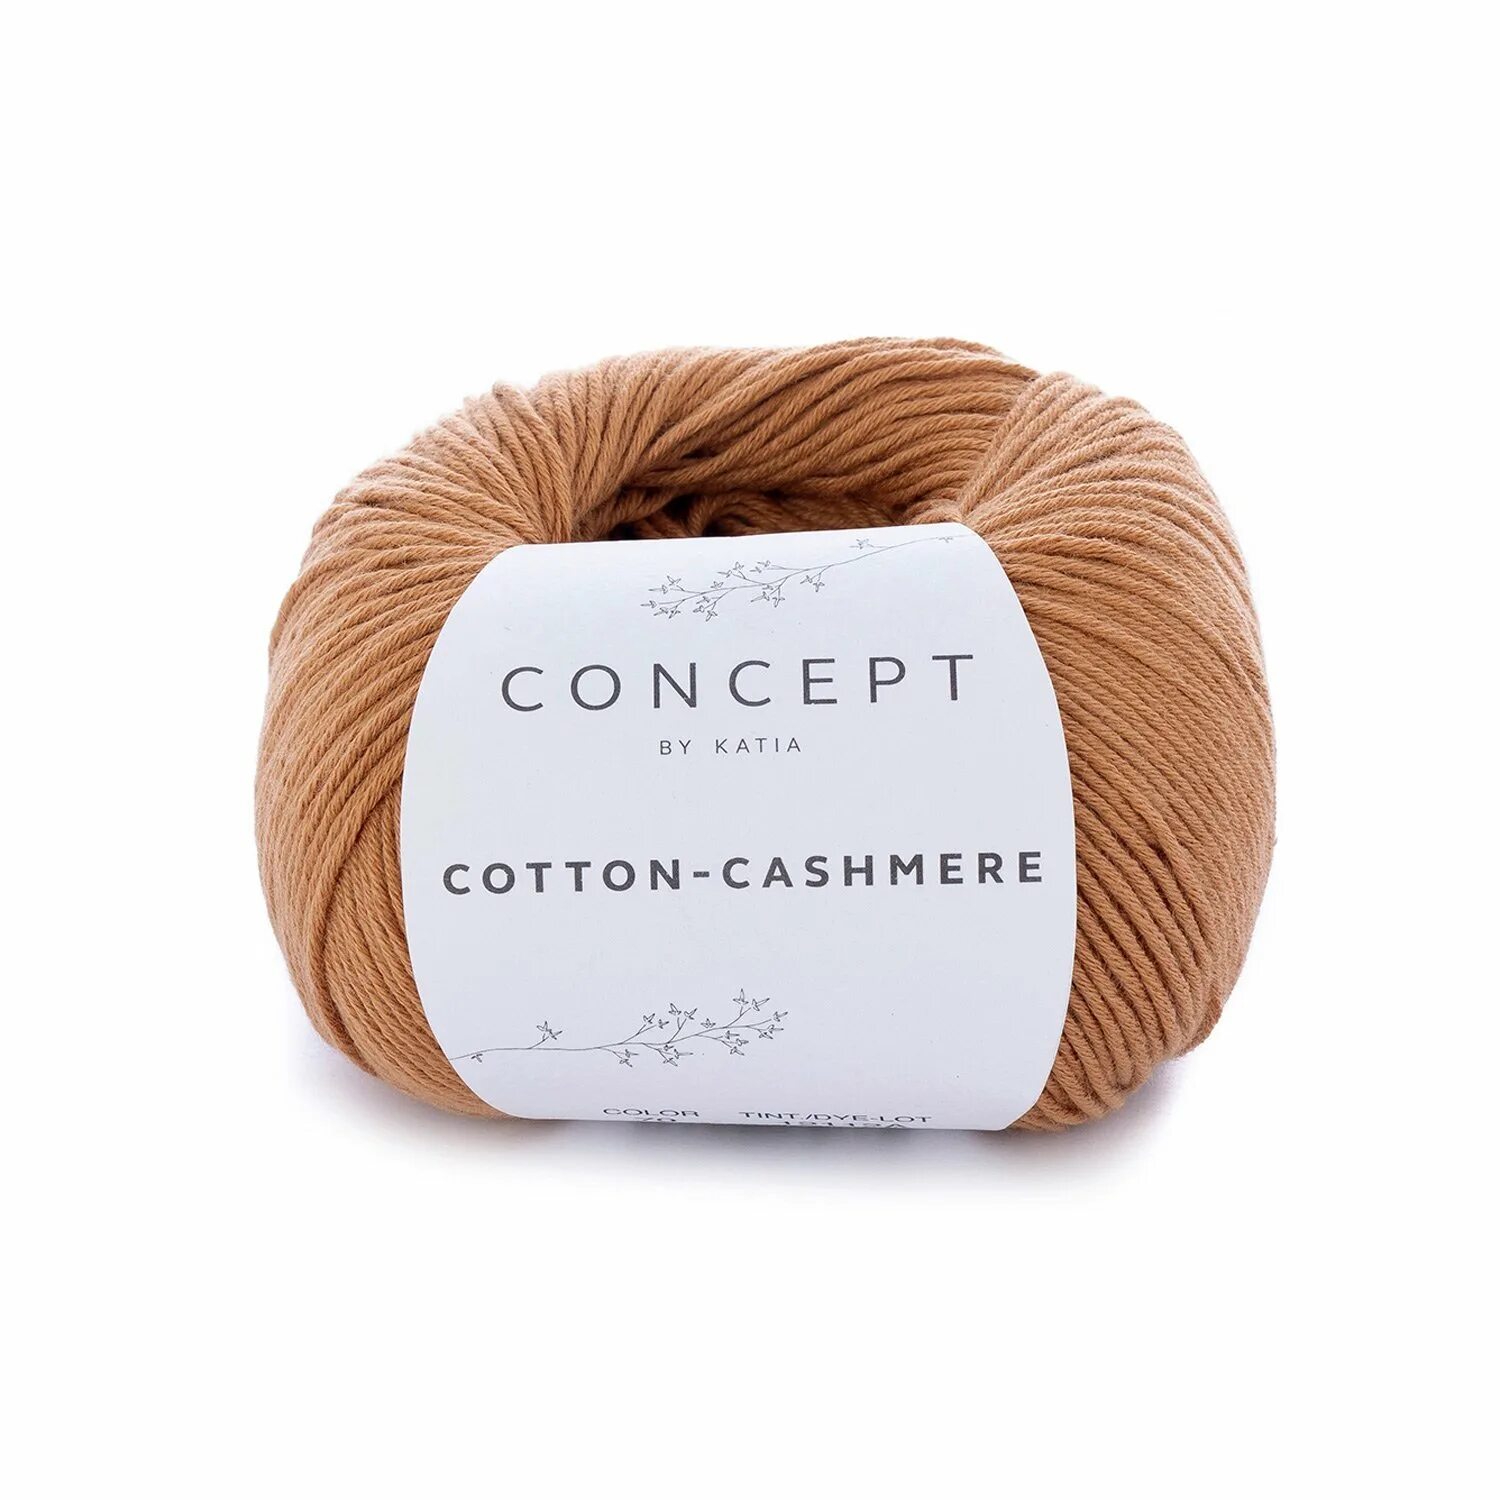 Кашемир отзывы. Пряжа Concept Cotton-Cashmere. Пряжа Katia Cotton Cashmere. Пряжа Concept Cotton Yak. Пряжа концепт коттон кашемир.